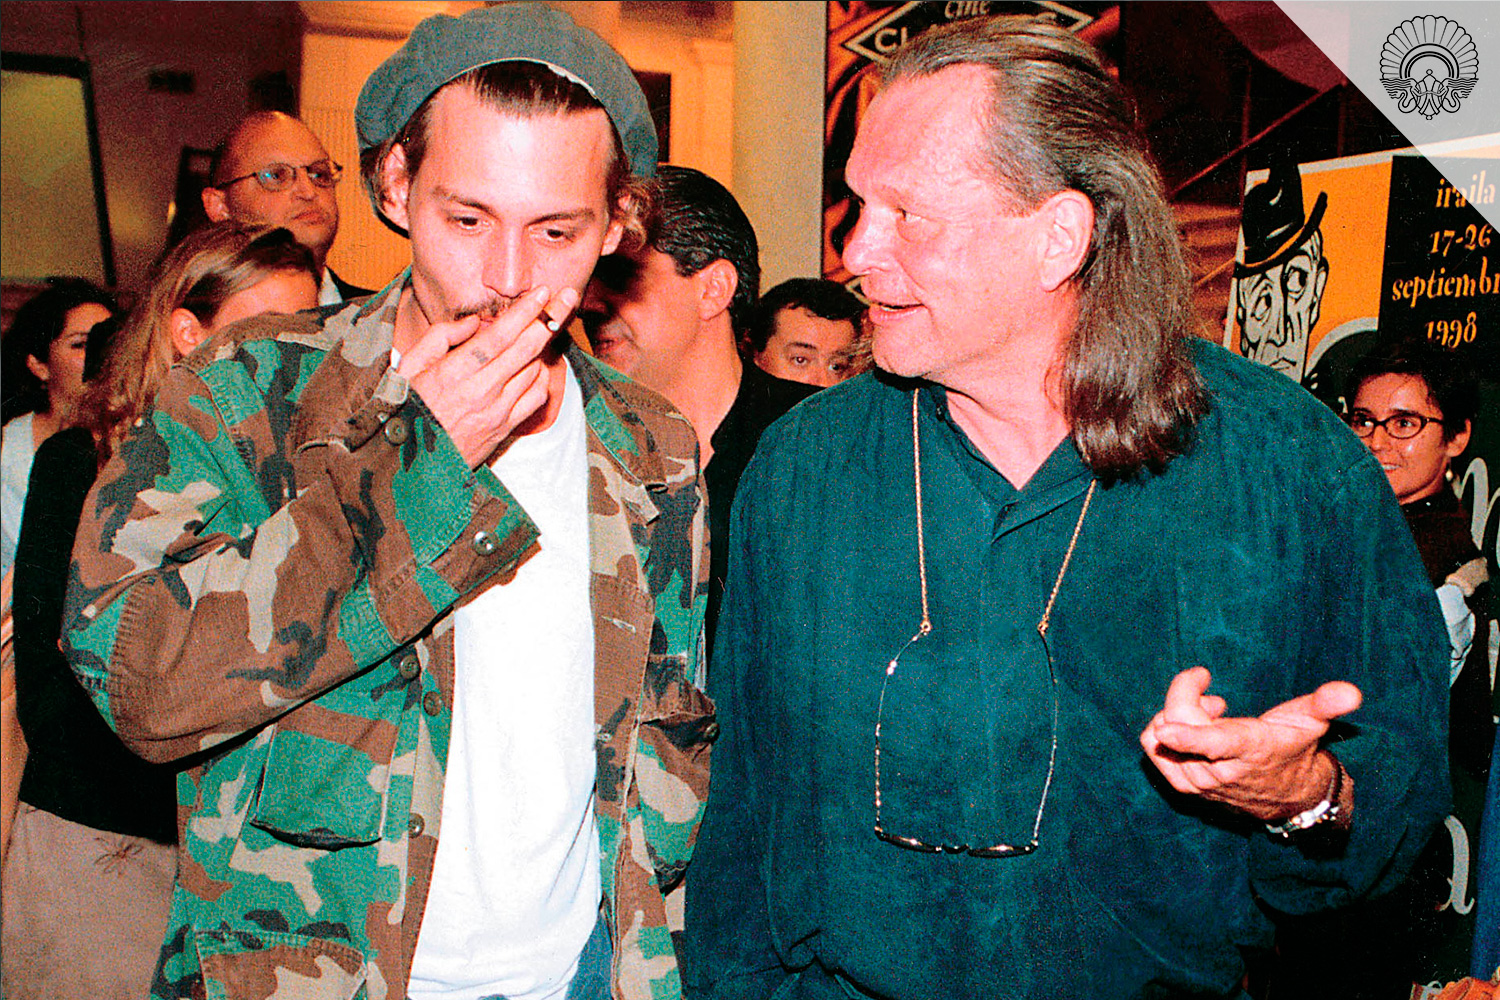 La 46 edición del Festival contó con la presencia de unos irreconocibles Johnny Depp y Terry Gilliam